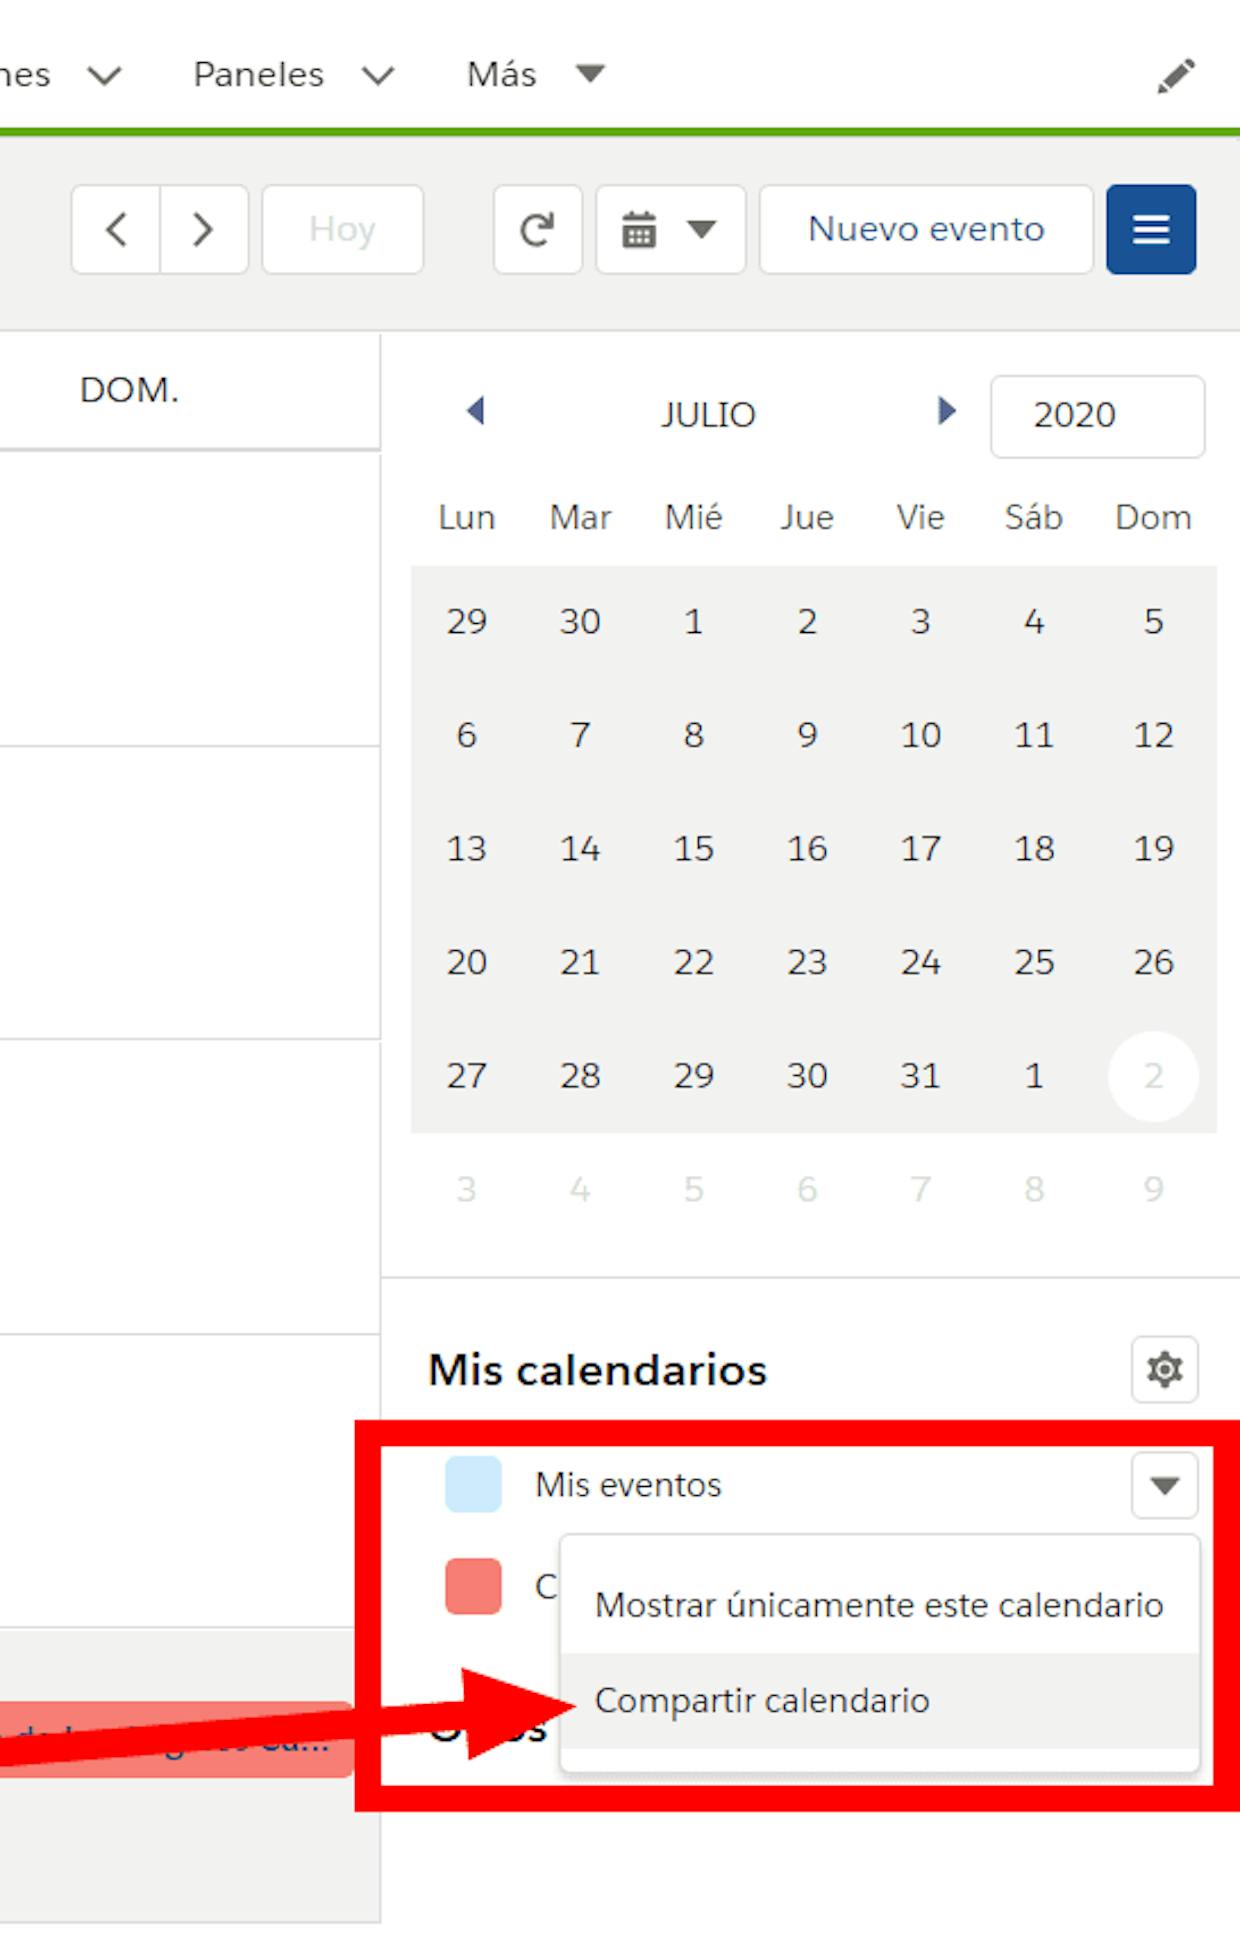 Es posible compartir un calendario que no sea el predeterminado "Mis Eventos"? 